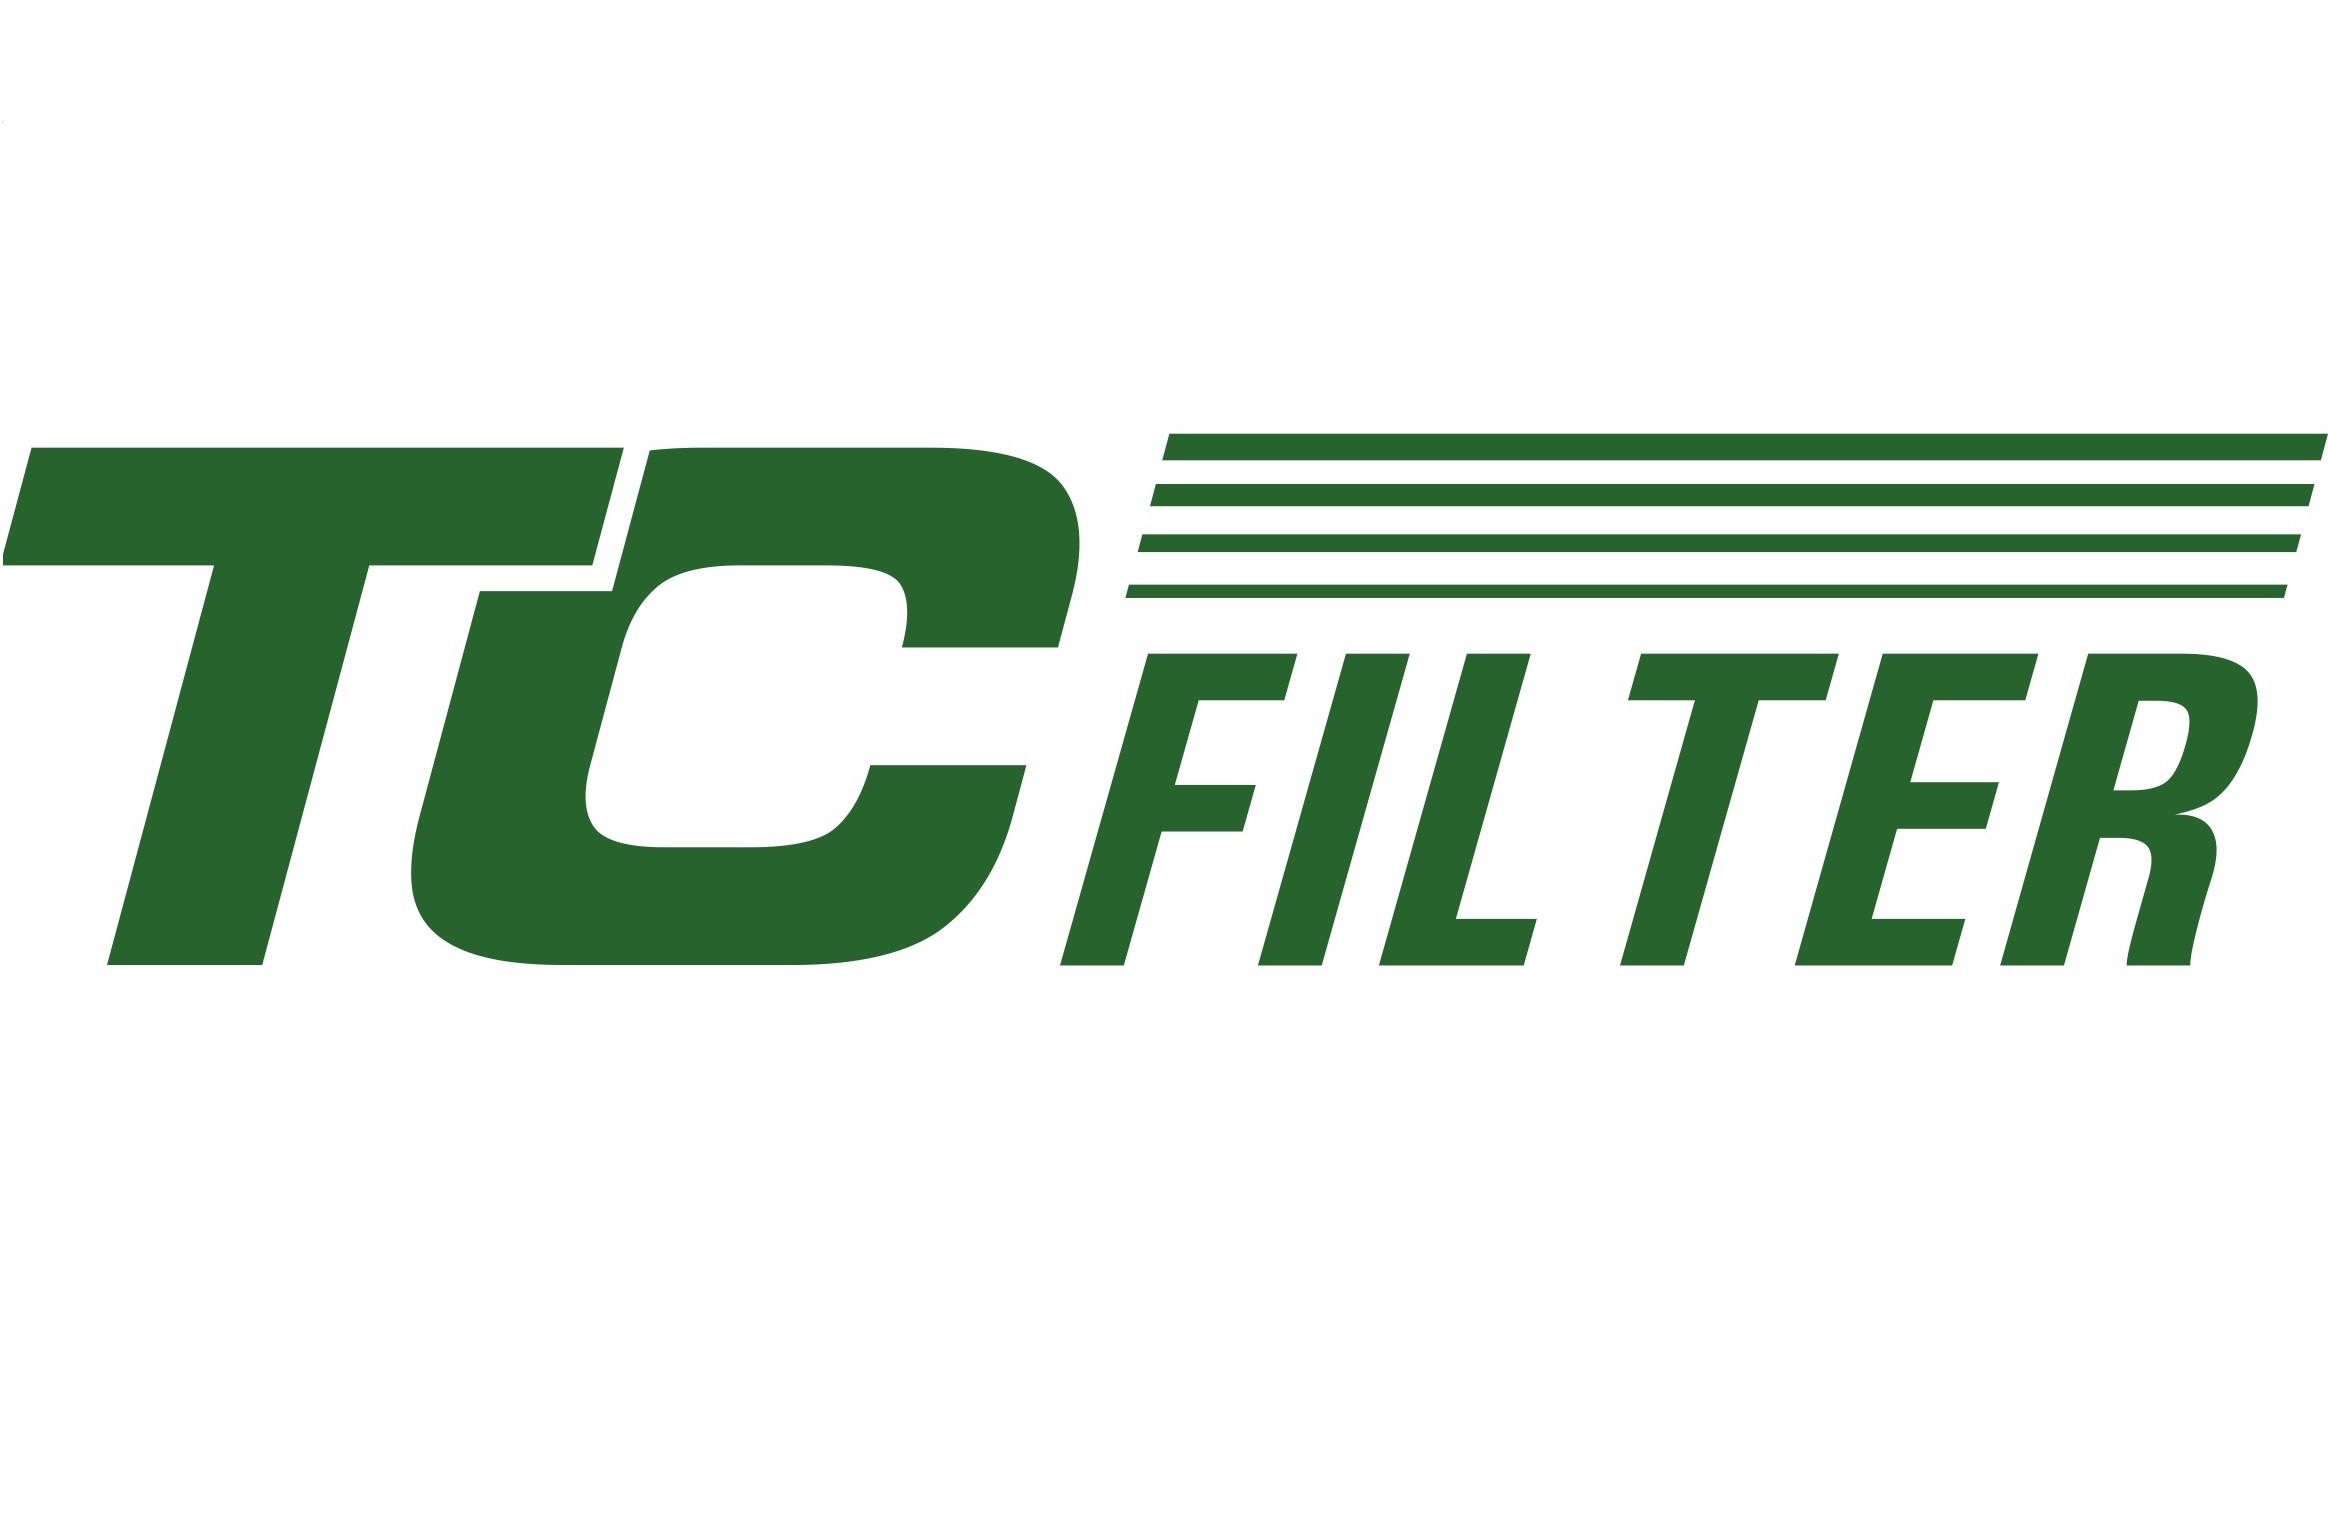 Качественные фильтра от европейского производителя TRUCK CLEAN FILTER (TC filter)